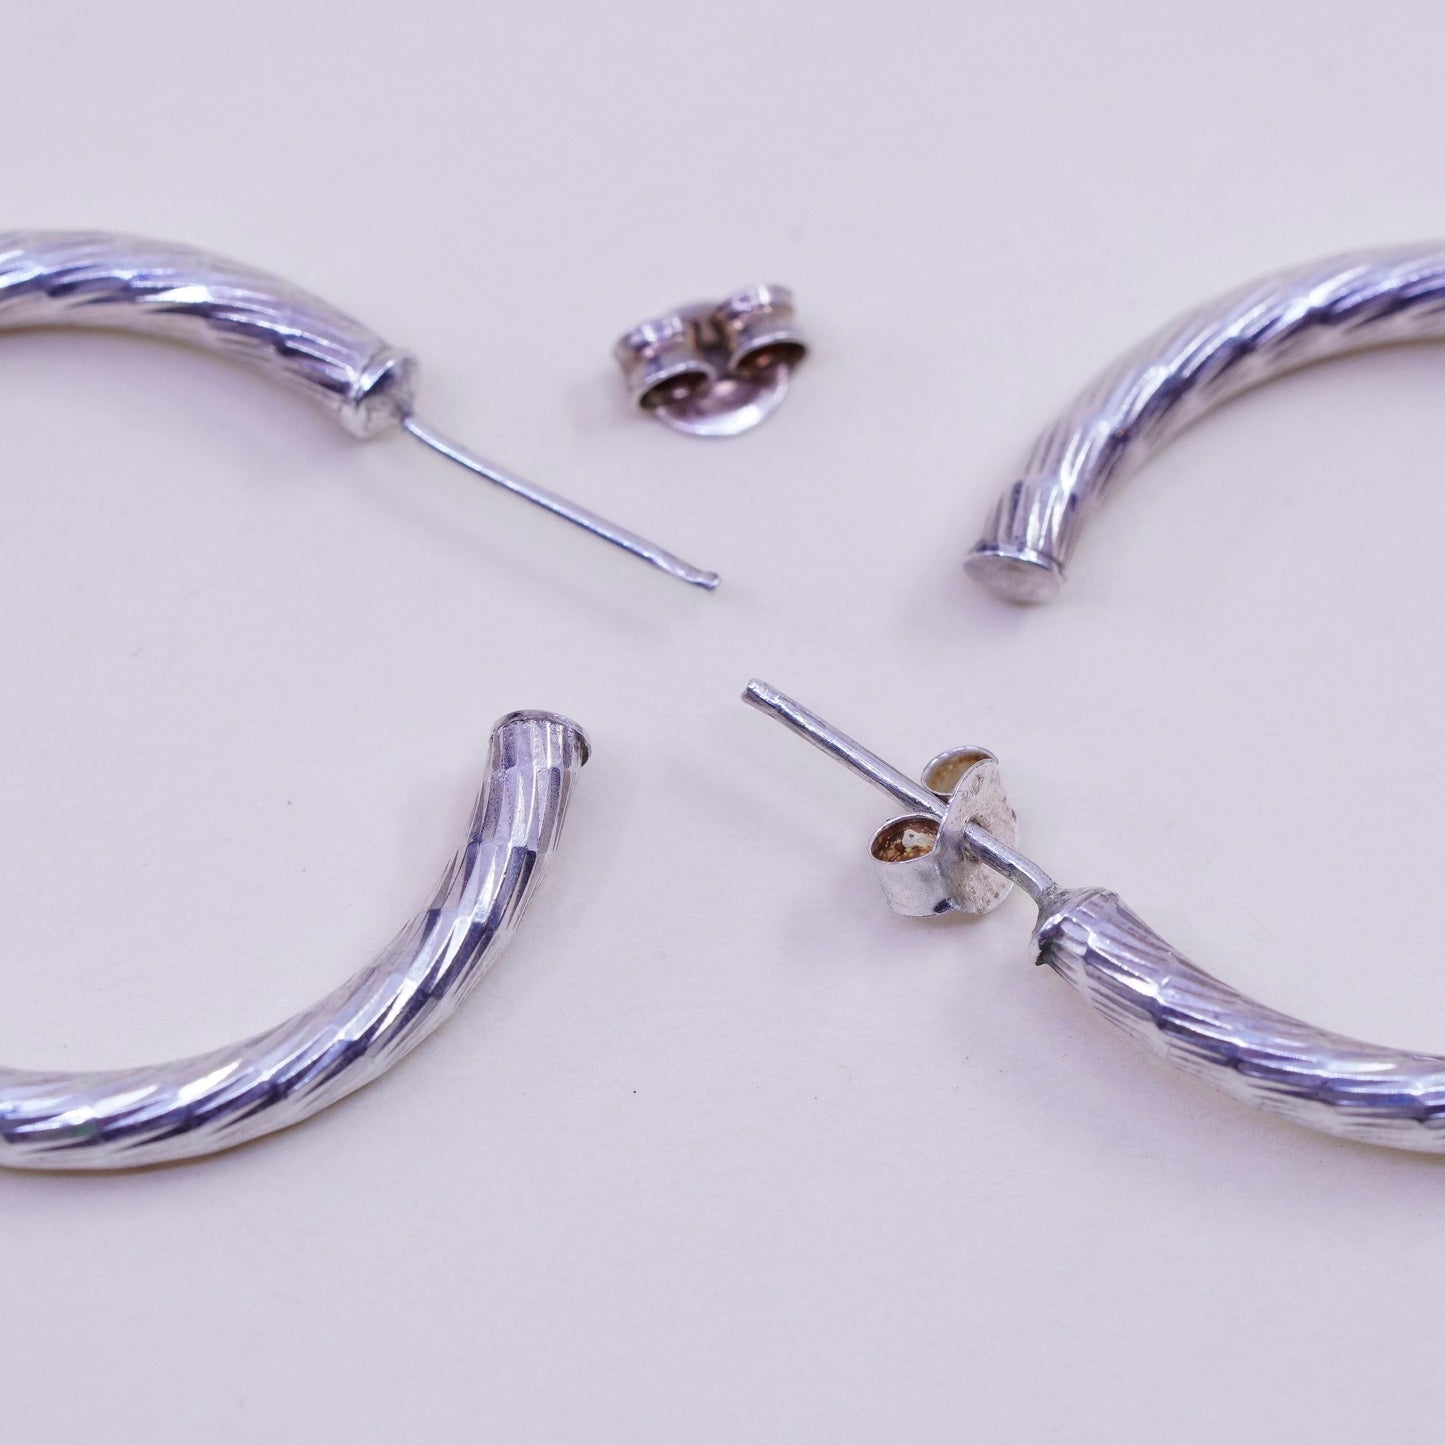 1.25” Vintage sterling 925 silver earrings, textured minimalist primitive hoops